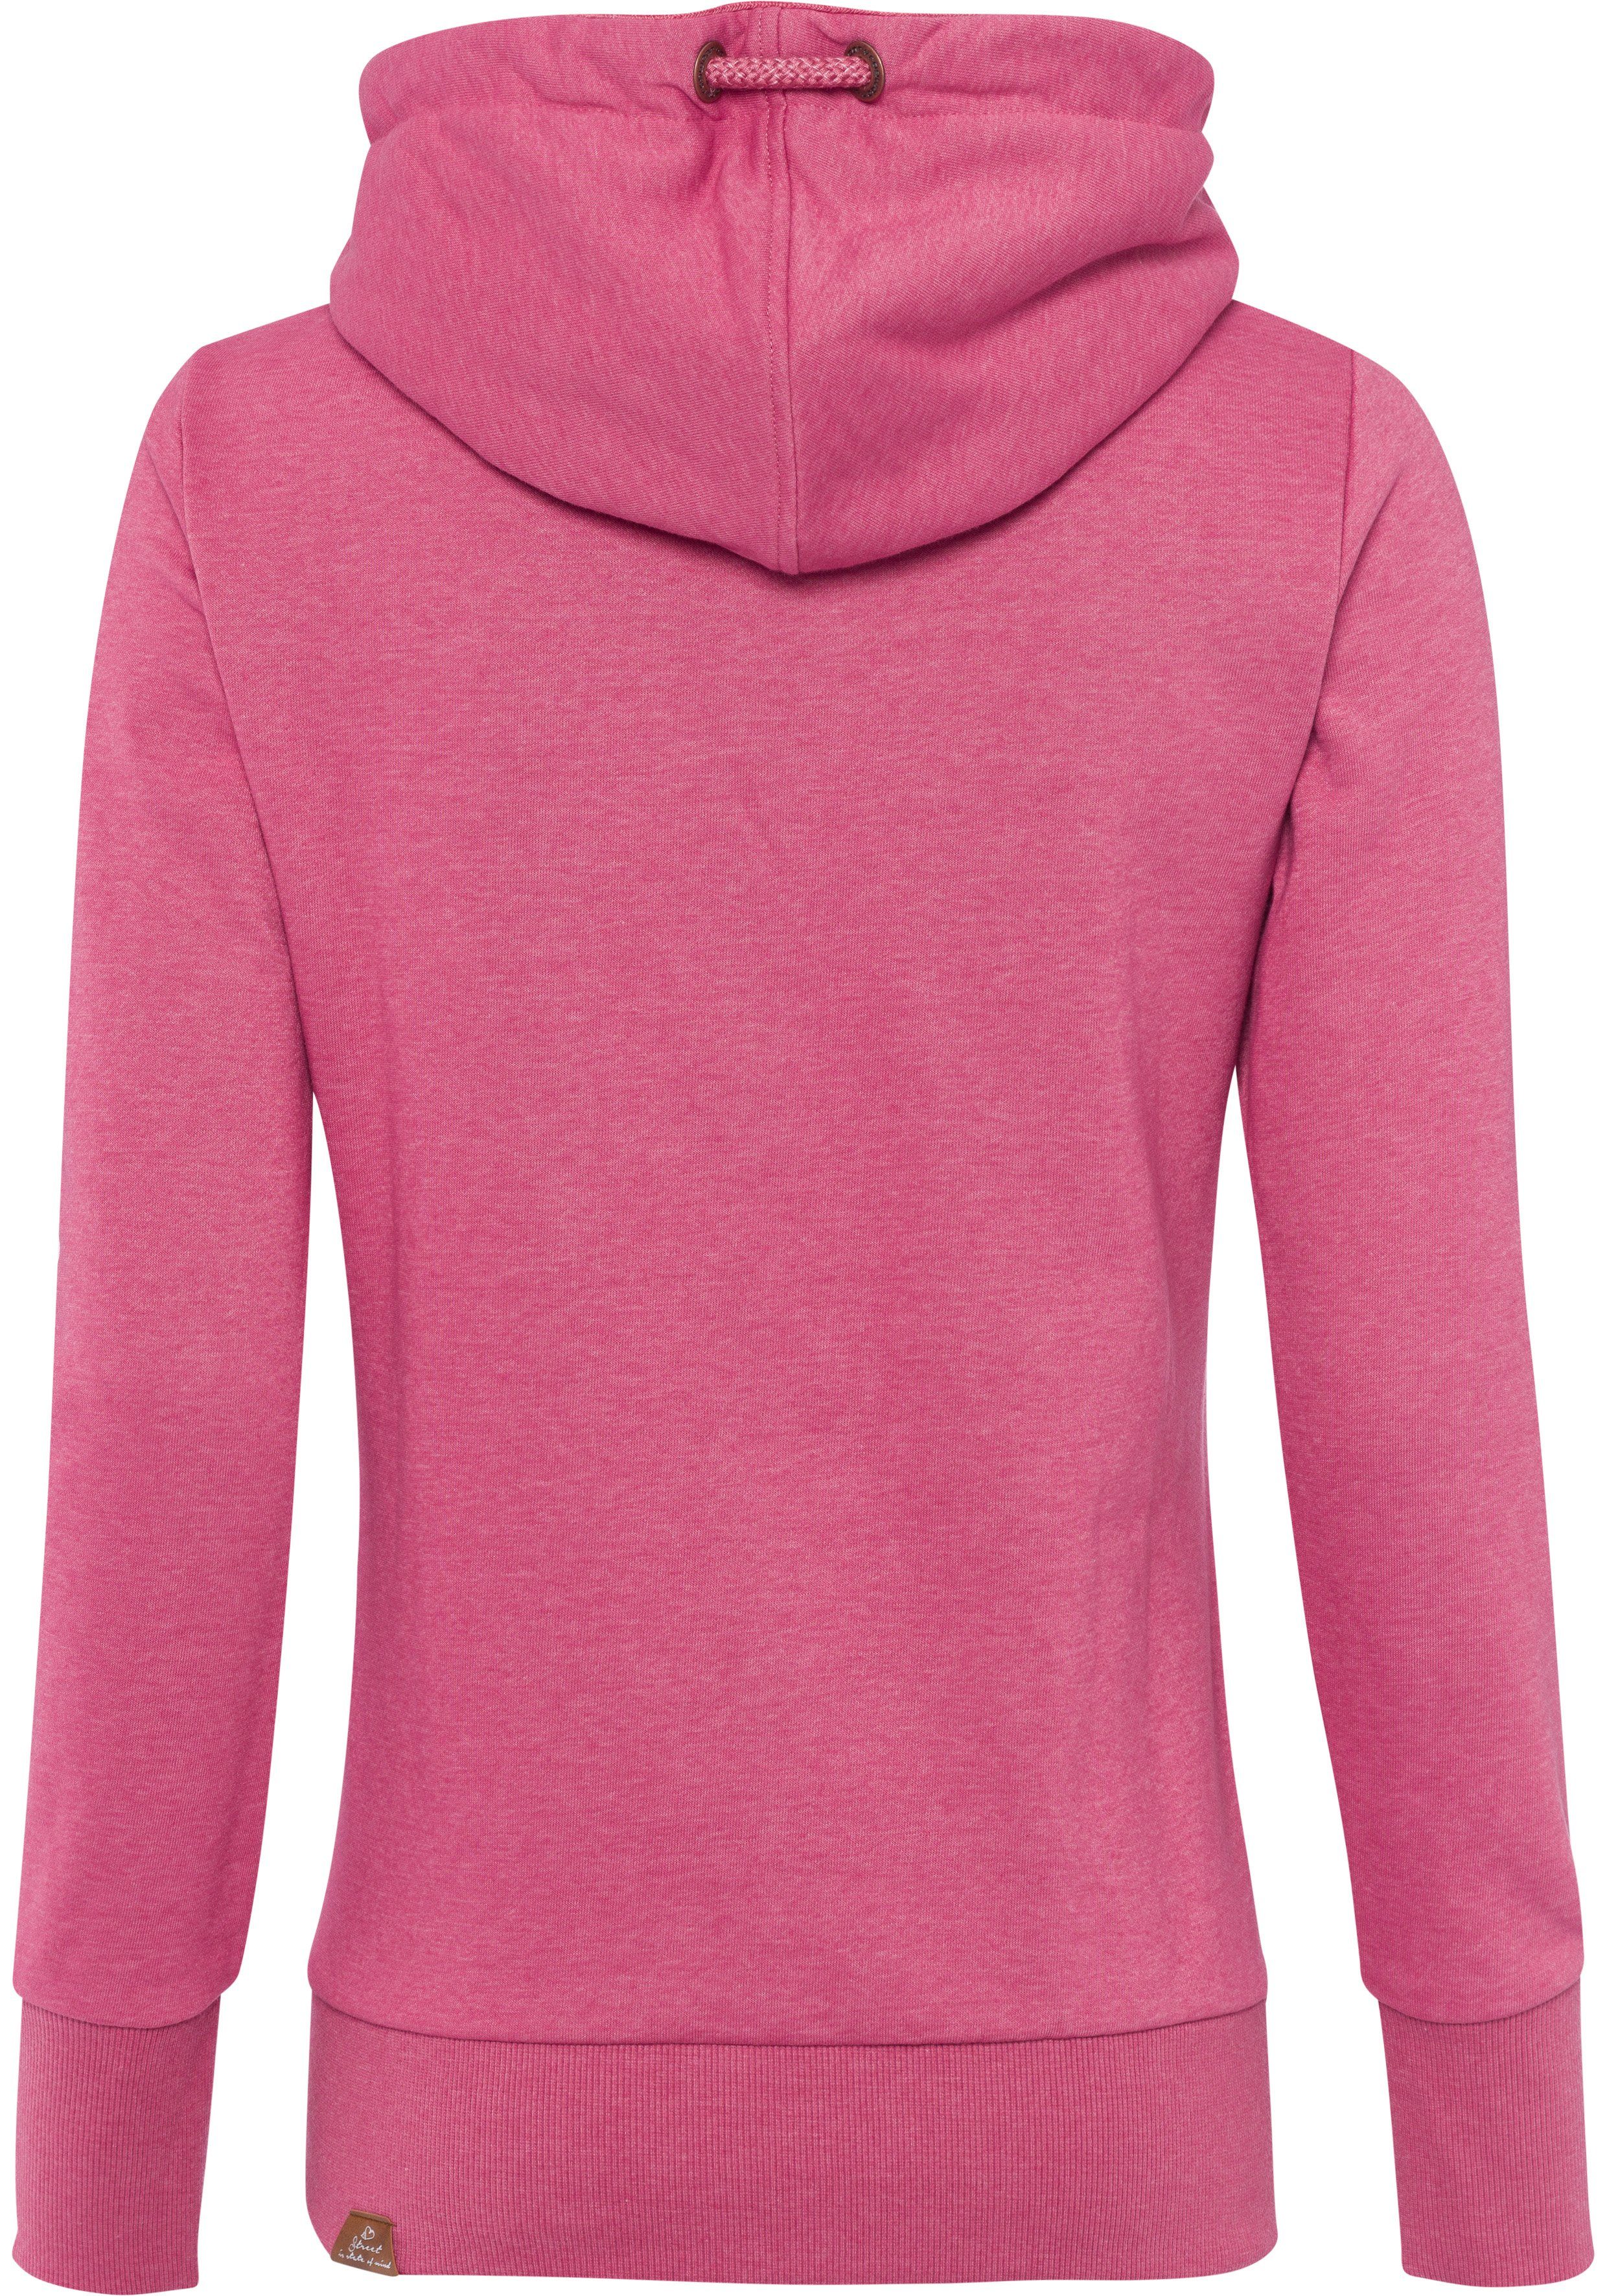 Ragwear GRIPY Sweater asymmetrischem rose mit BOLD Schalkragen 4041